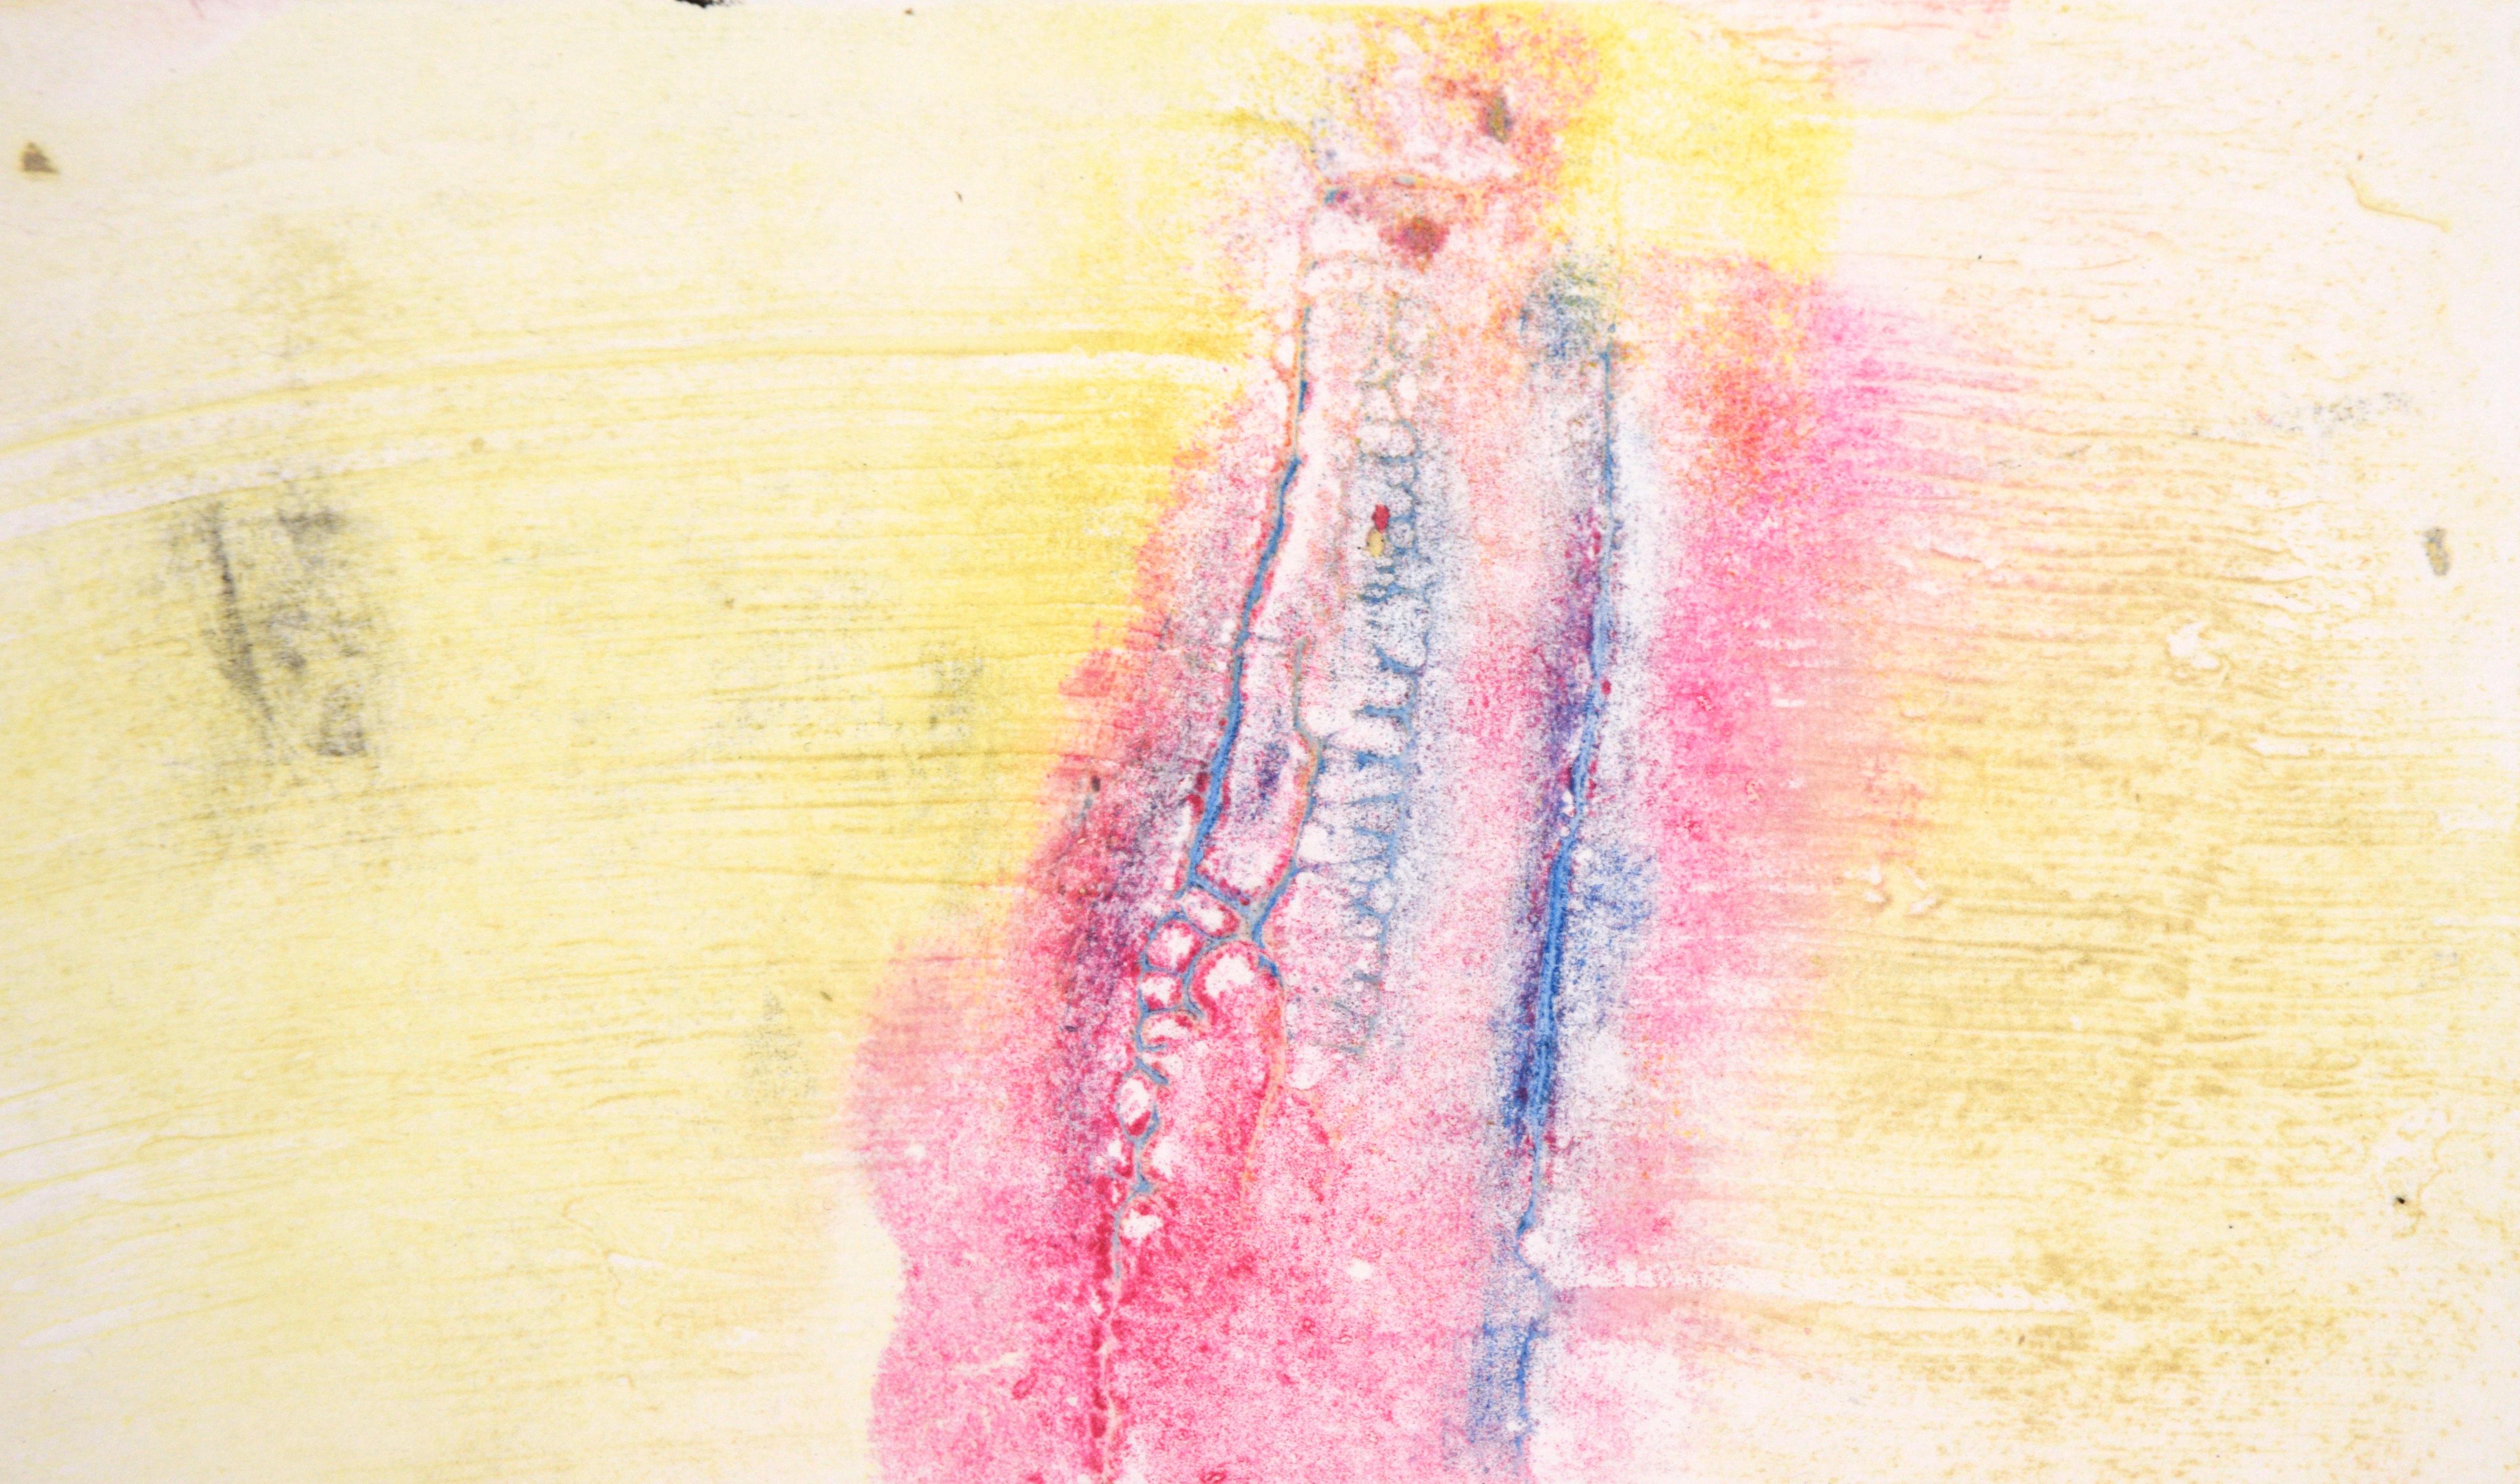 Monotype de transfert bleu et rose sur jaune texturé à l'huile sur papier

Monotype original peint à la main et transféré par l'artiste californienne Heather Speck (américaine, C.C.). Des textures roses et bleues se détachent sur un fond jaune. Le